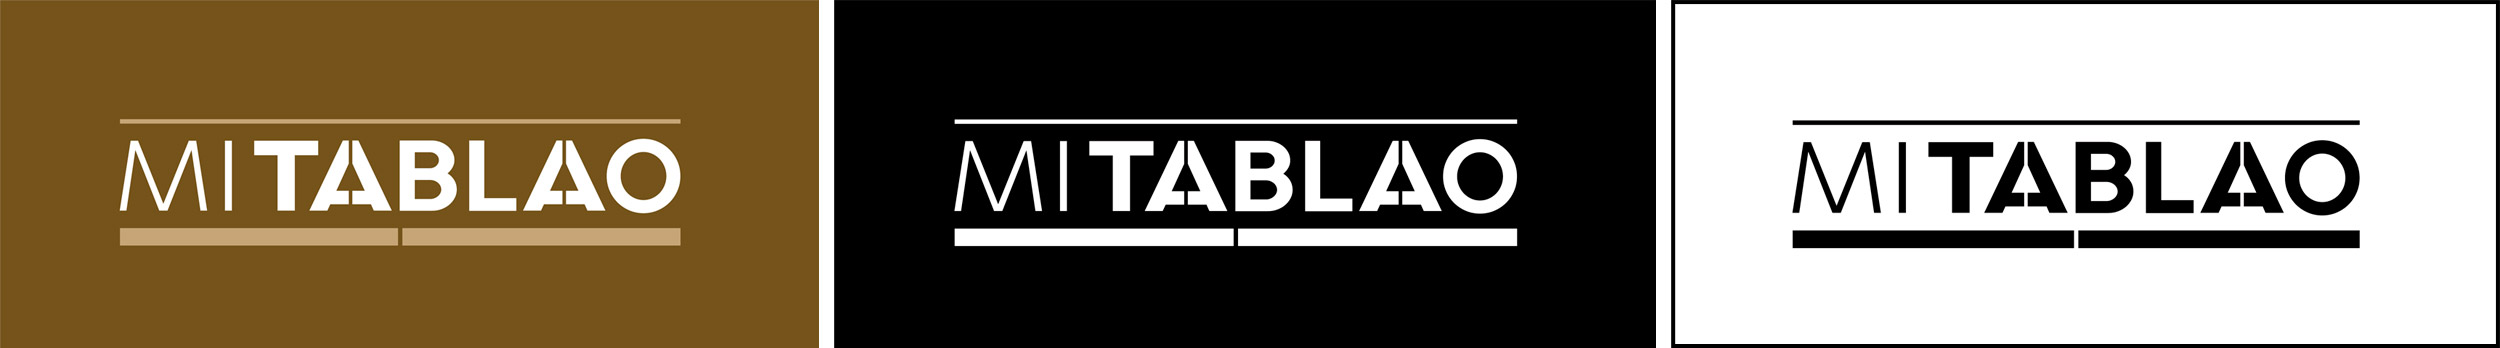 Mi Tablao - logotipo versiones cromáticas